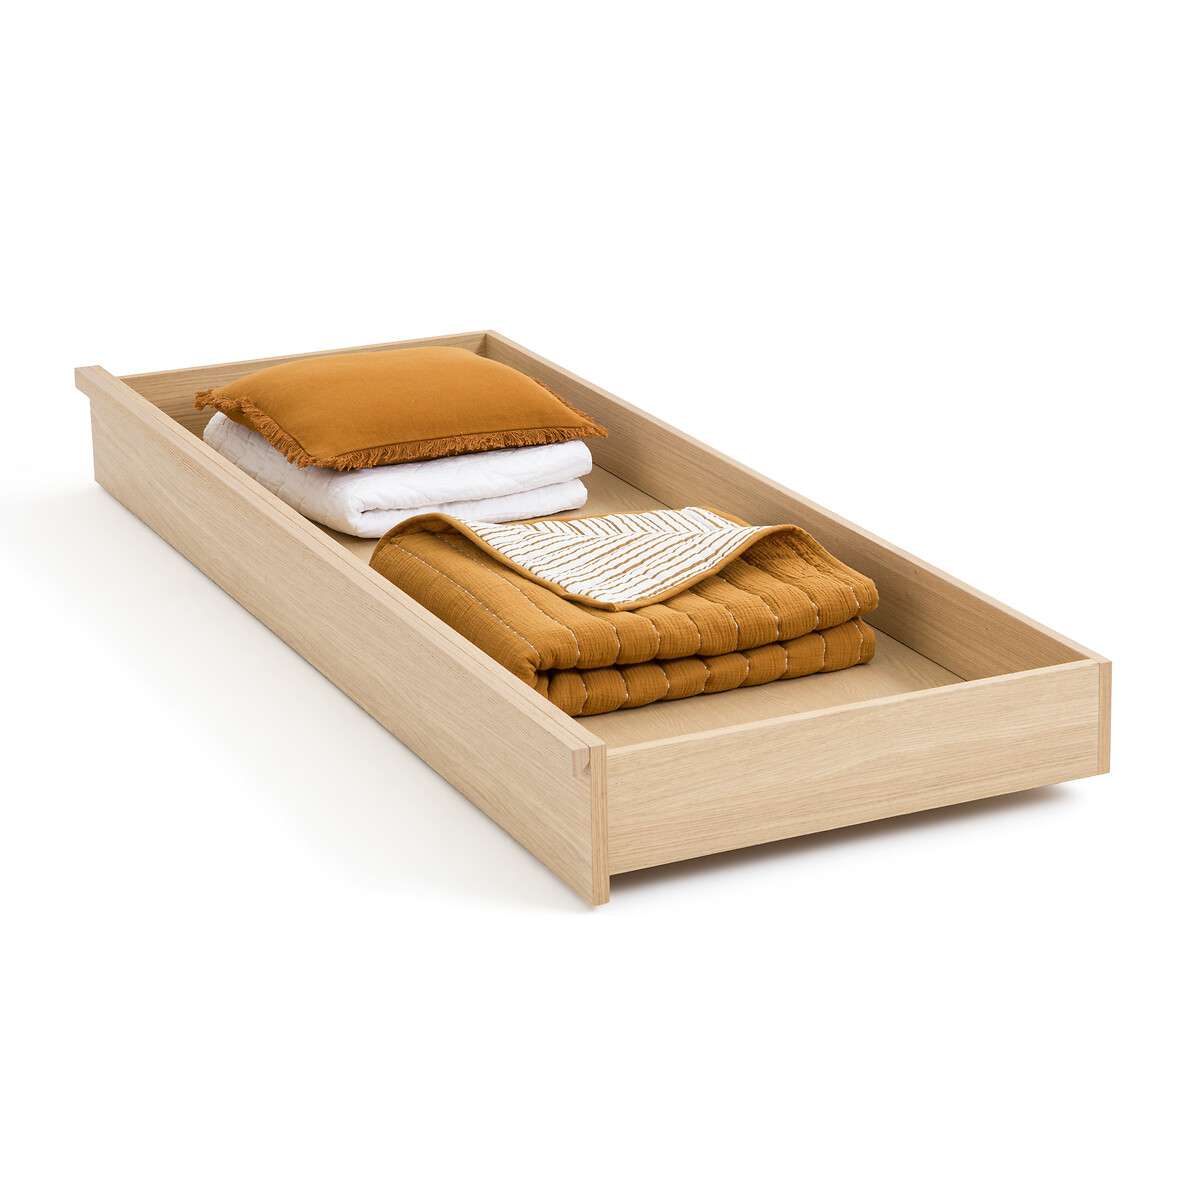 Ящик Для кровати из дубового шпона Denho 200 см каштановый